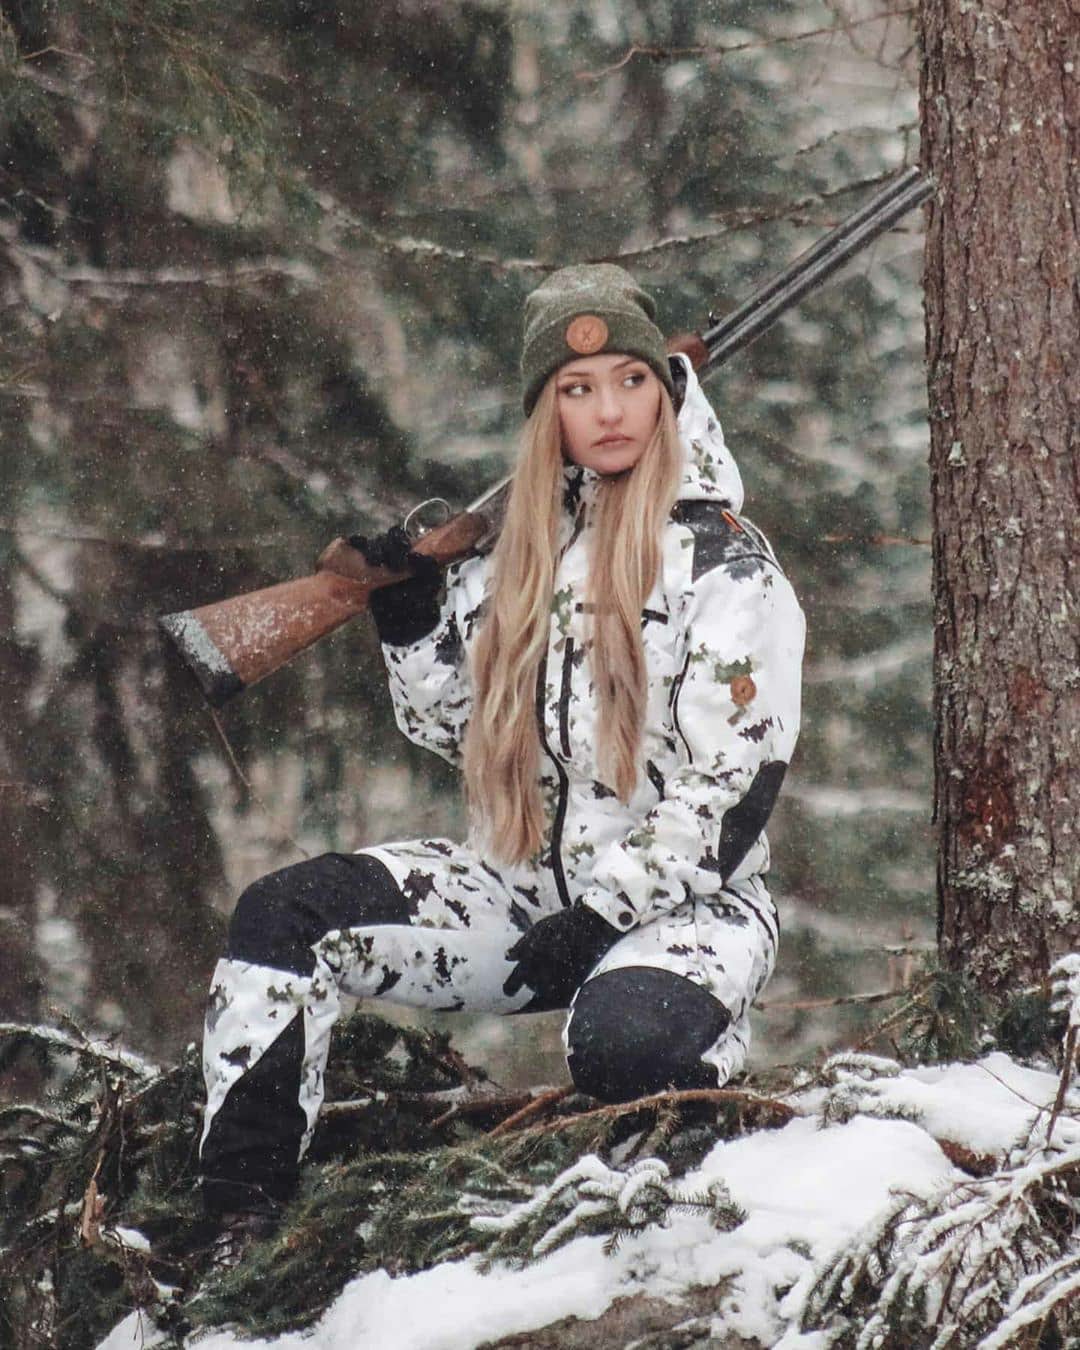 Naruska lumicamo metsästyspuku naisen päällä metsällä